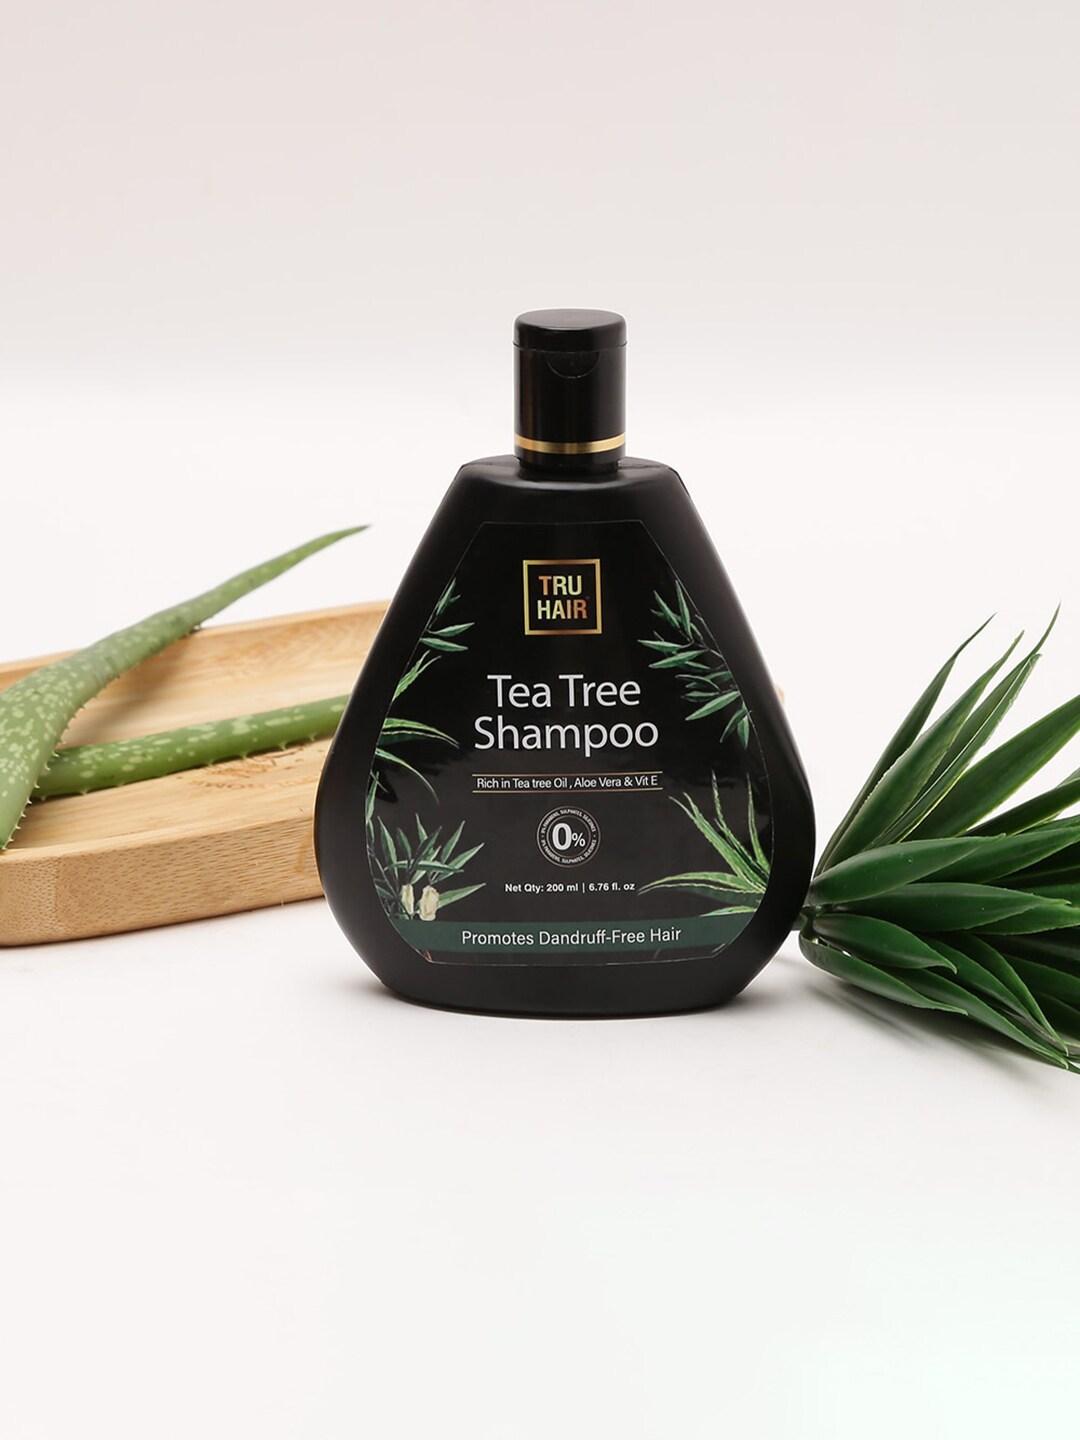 TRU HAIR Tea Tree Shampoo with Aloe Vera & Vitamin E - 200ml